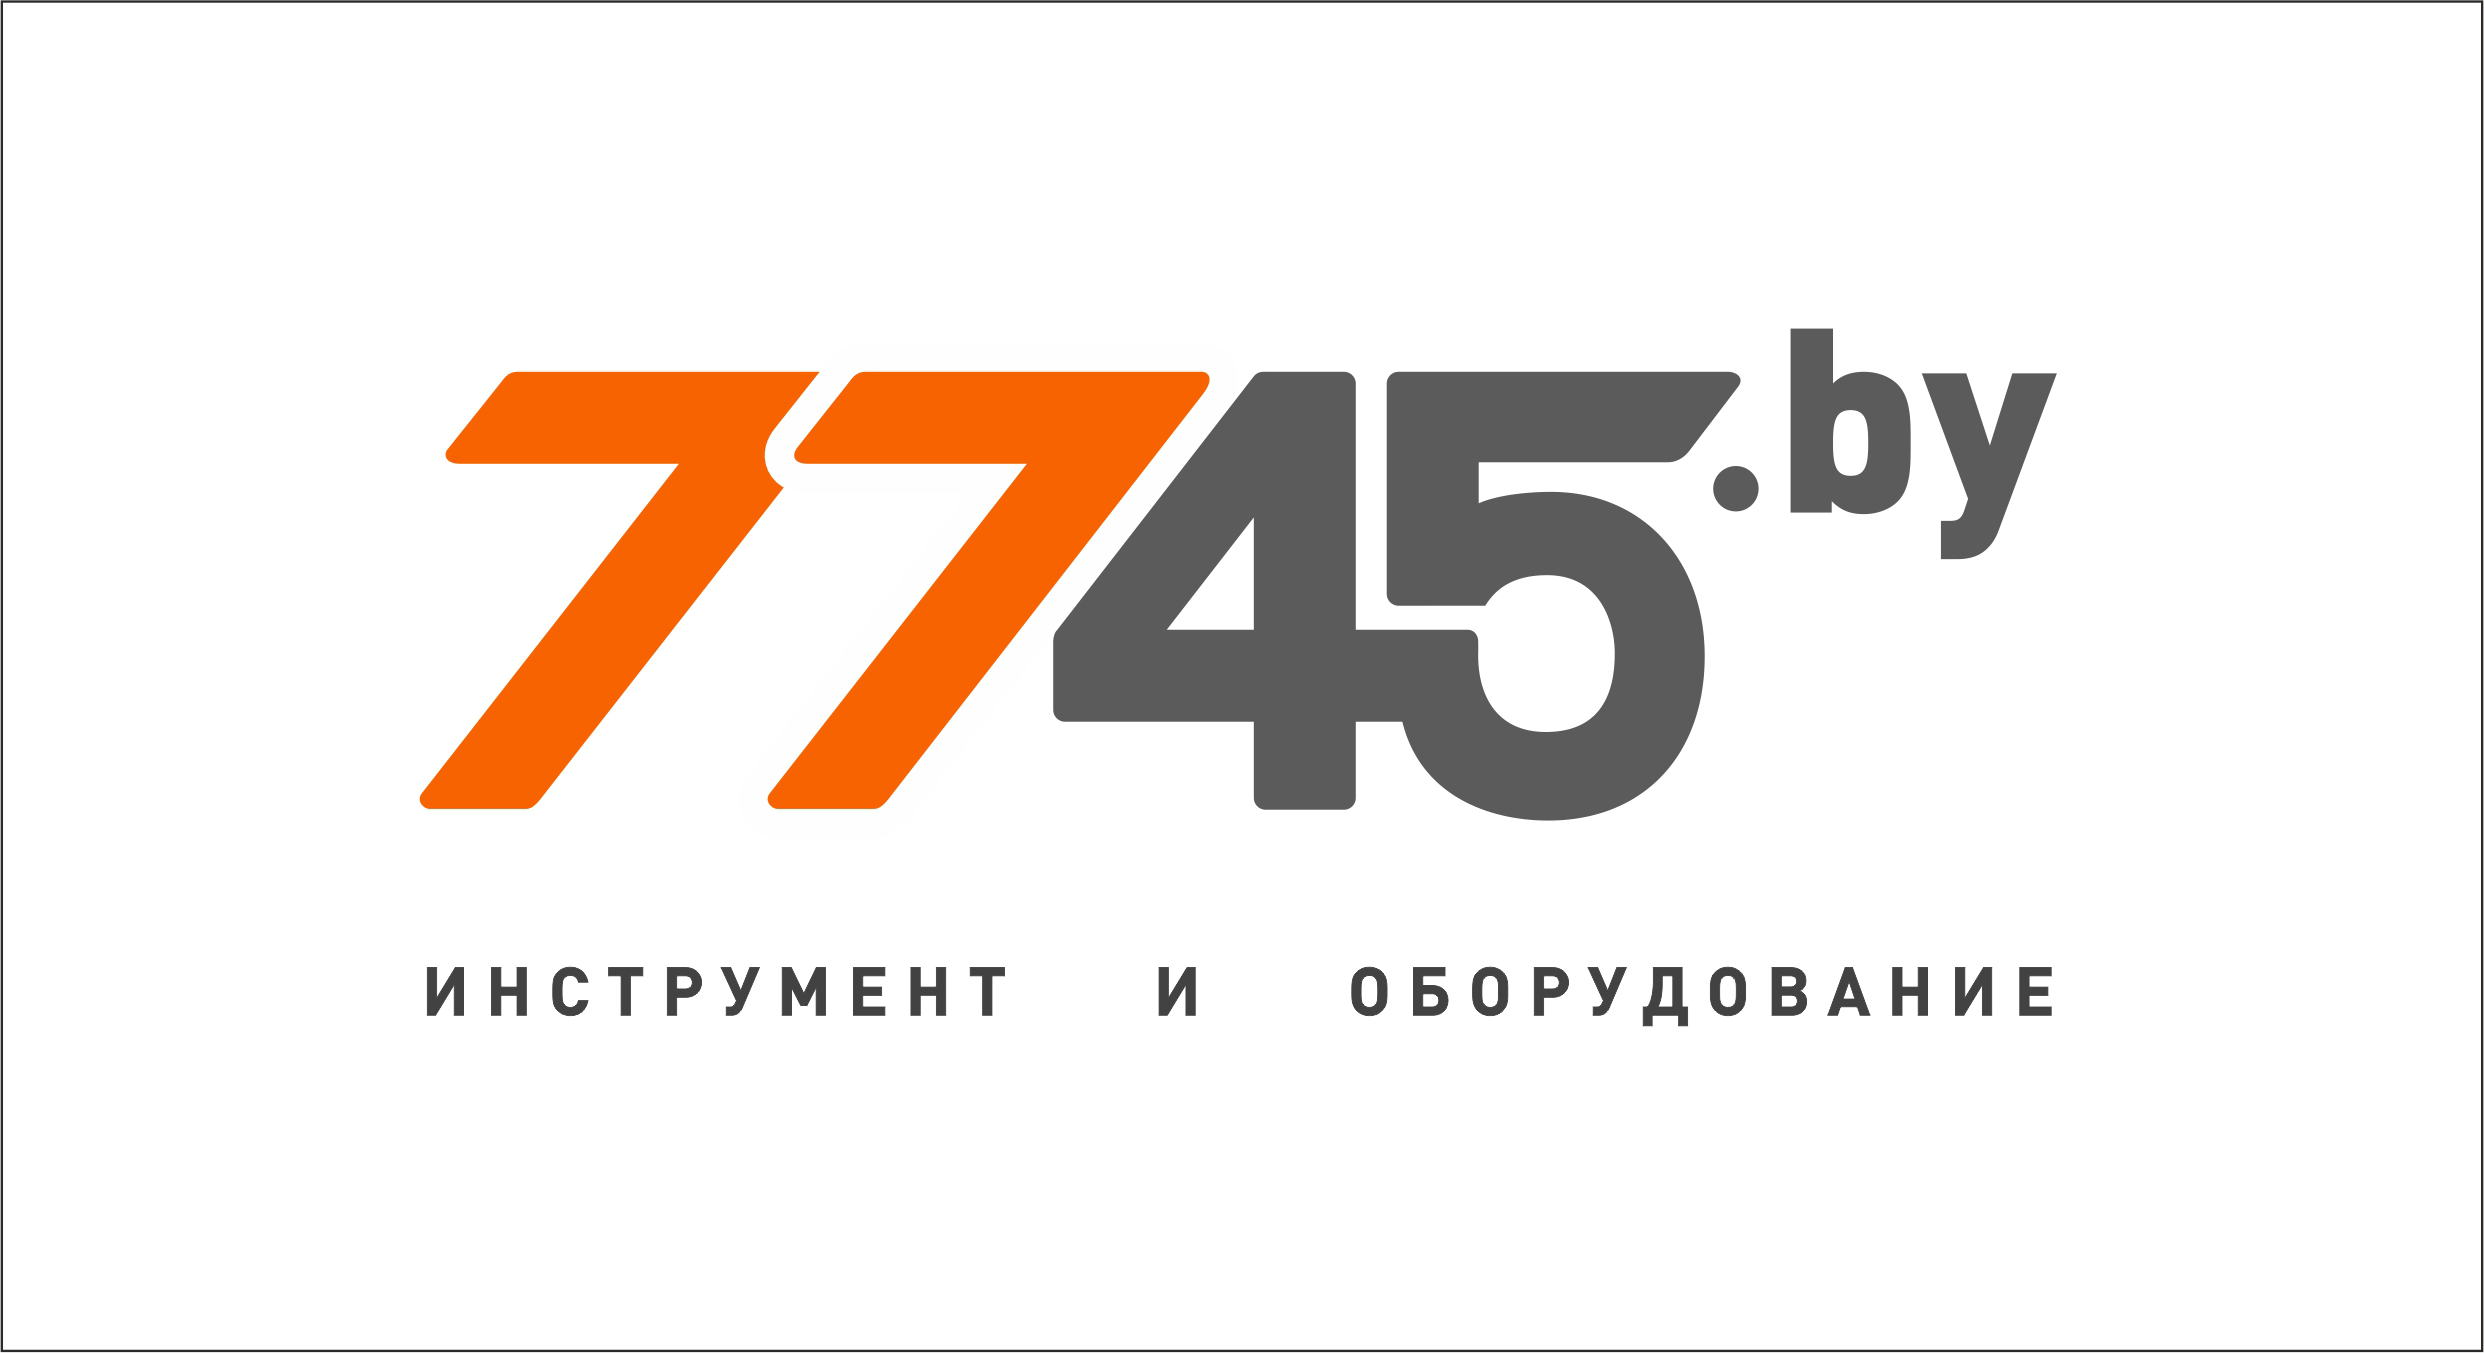 7745 Бу Интернет Магазин Могилев